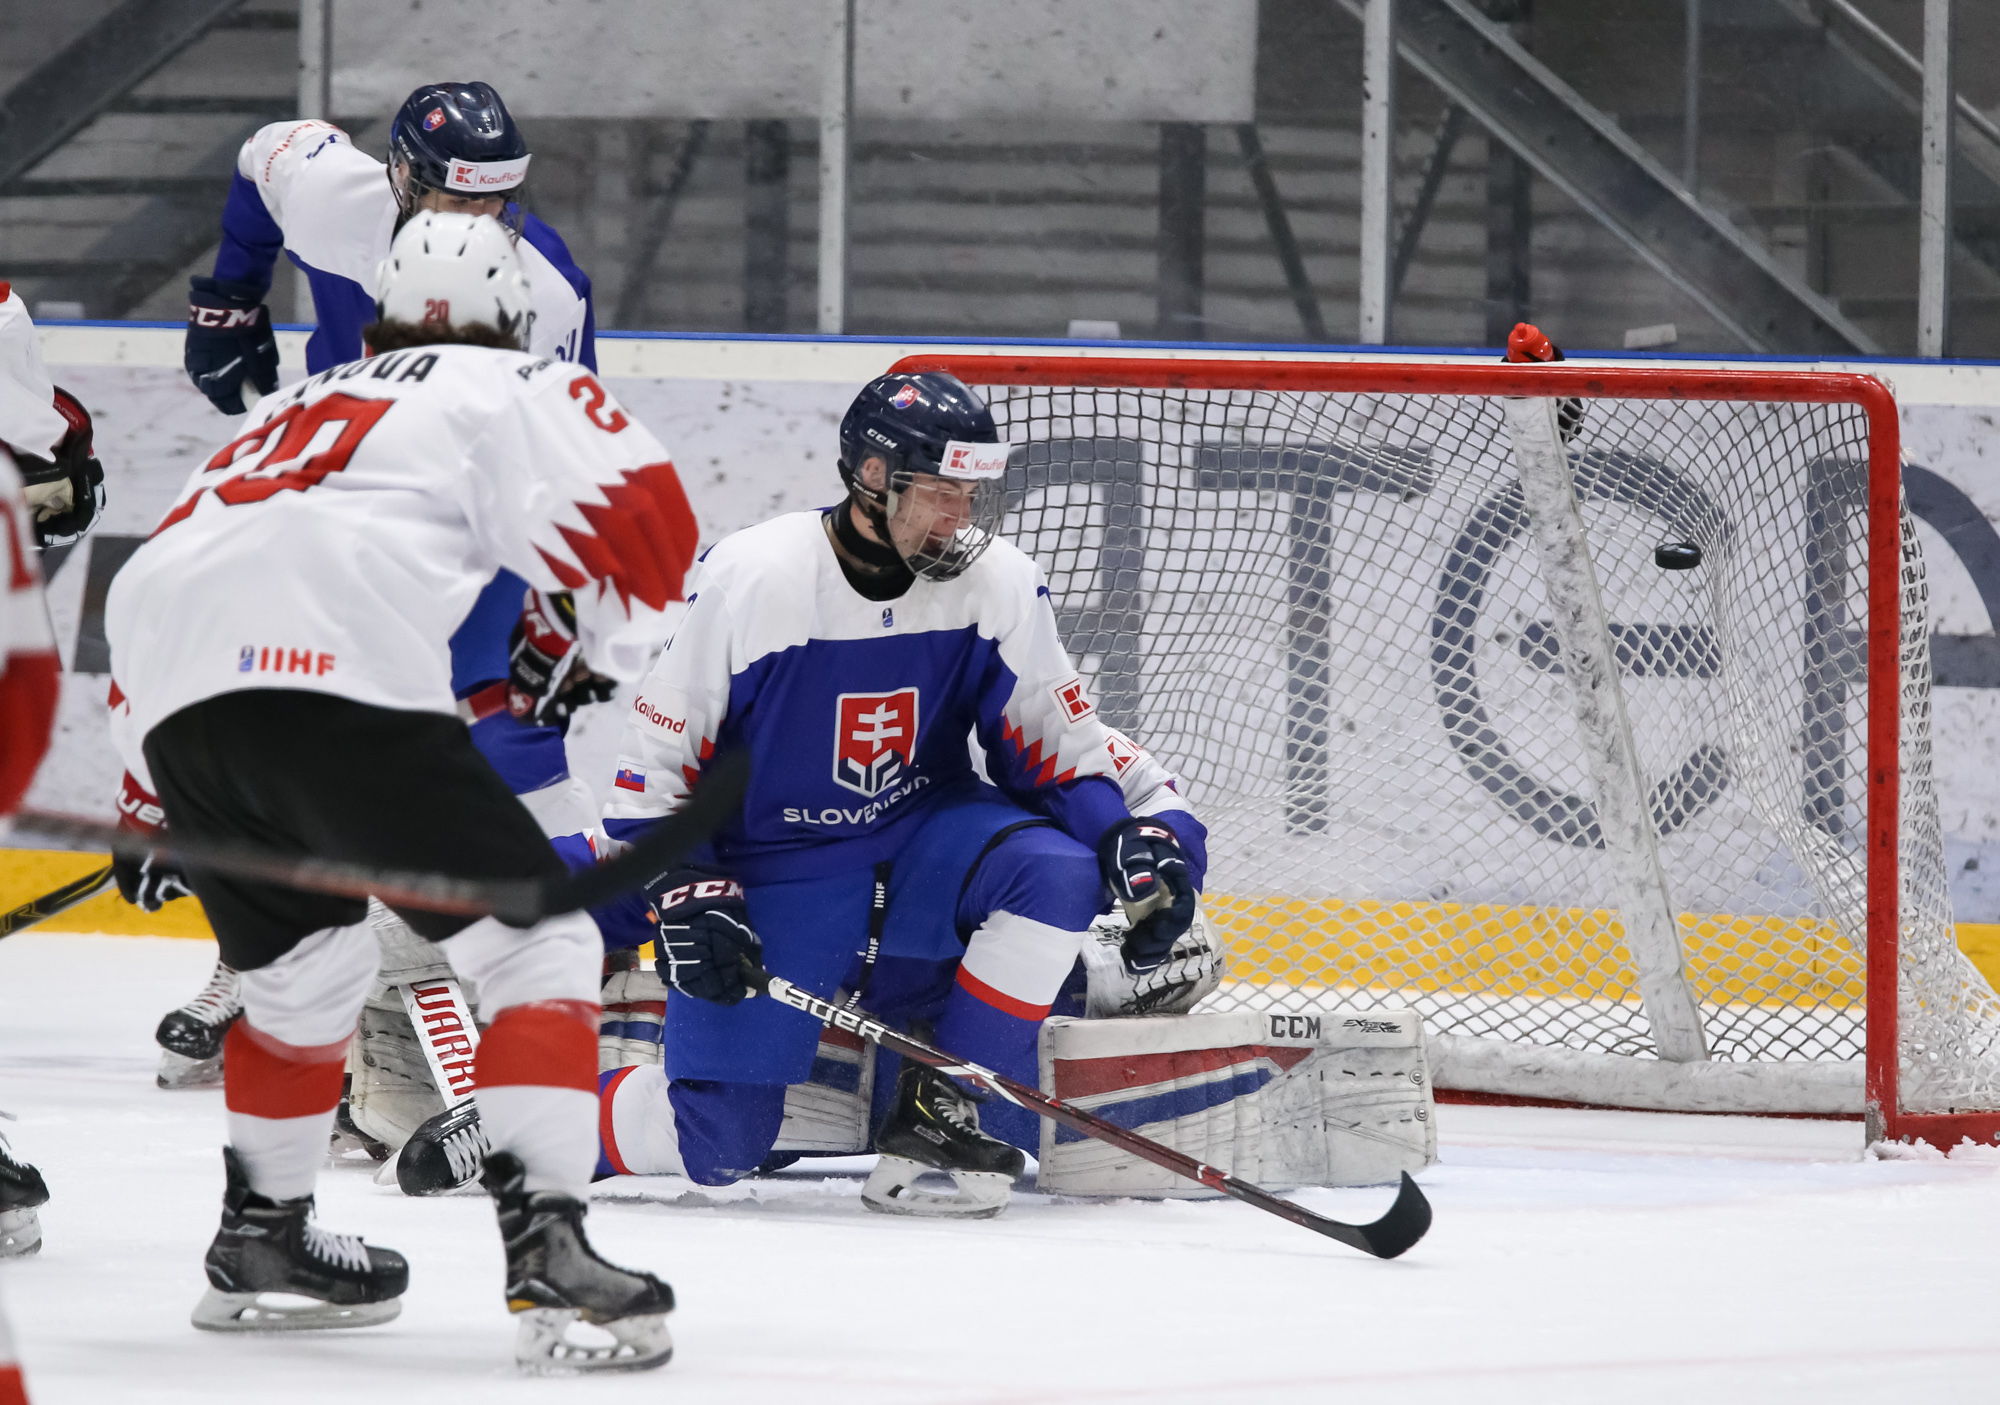 IIHF - Gallery: Slovakia vs. Switzerland (R2) - 2019 IIHF Ice Hockey ...